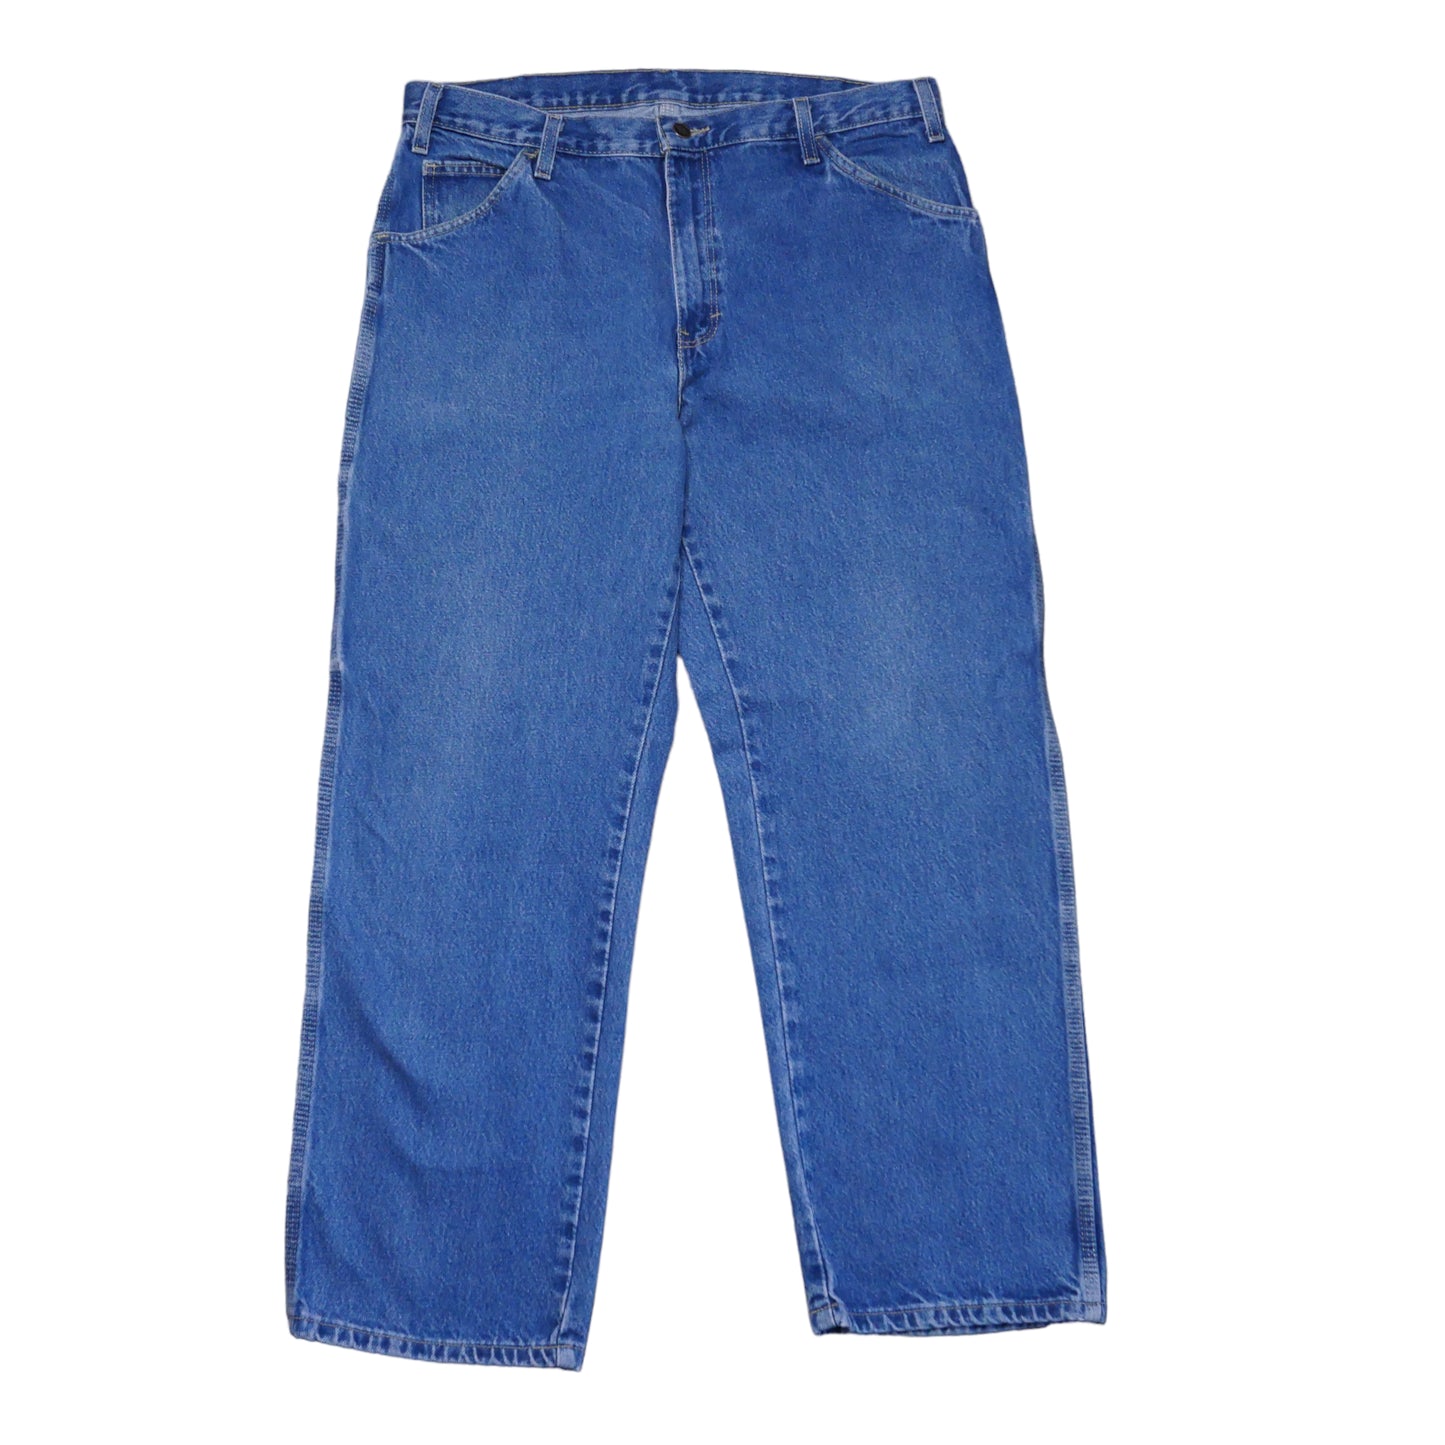 Dickies Carpenter Jeans - 36 x 30